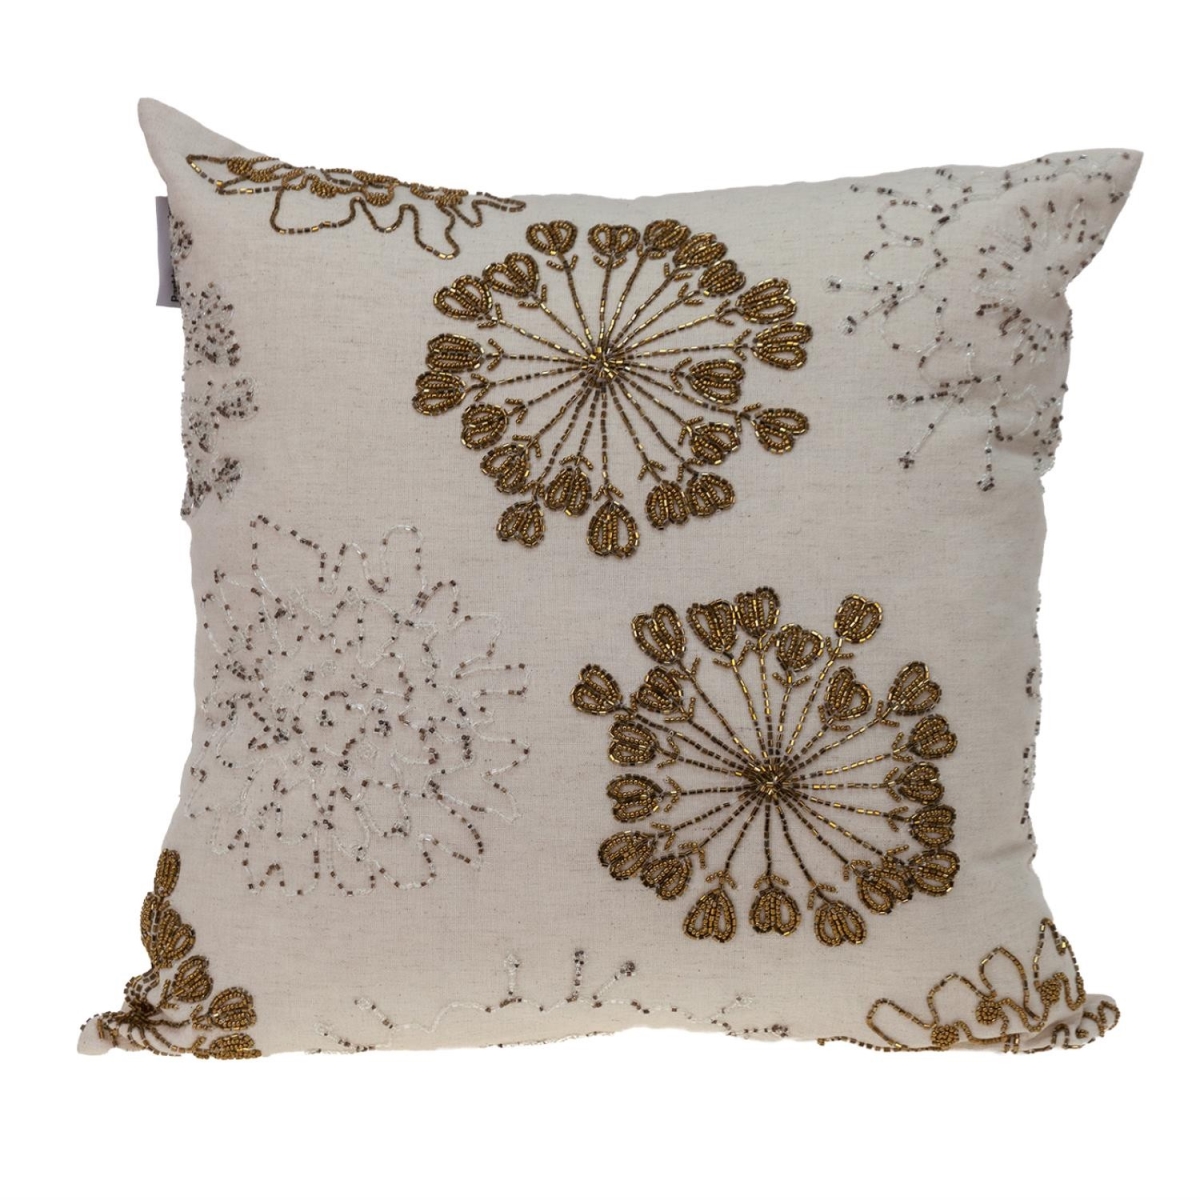 402699 Natural & Golden Metallic Beaded Decorative Throw Pillow -  HomeRoots